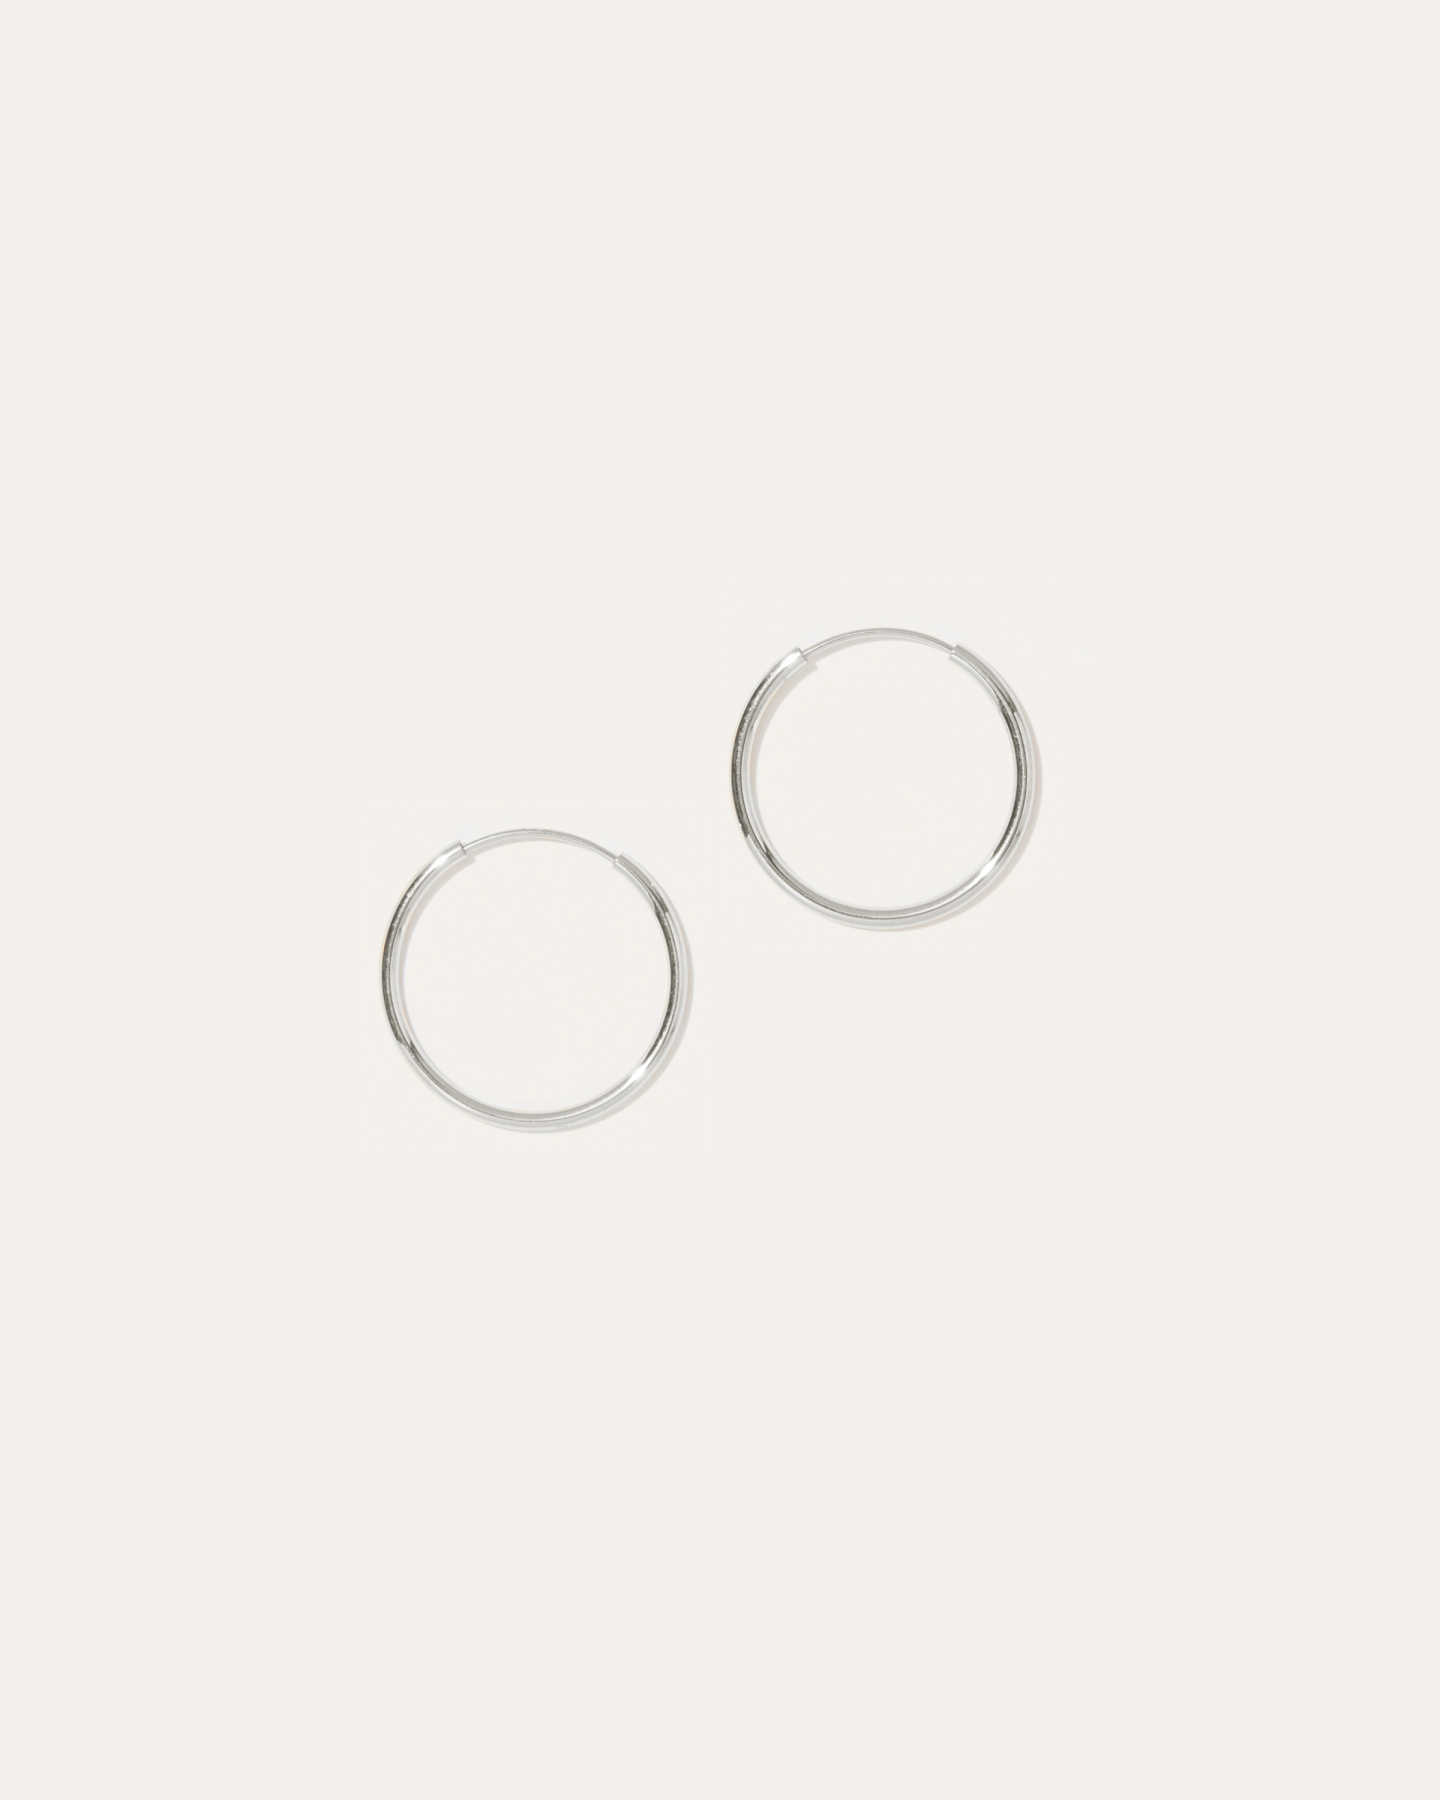 14k Gold Everyday 14mm Hoop Earrings - White Gold - 1